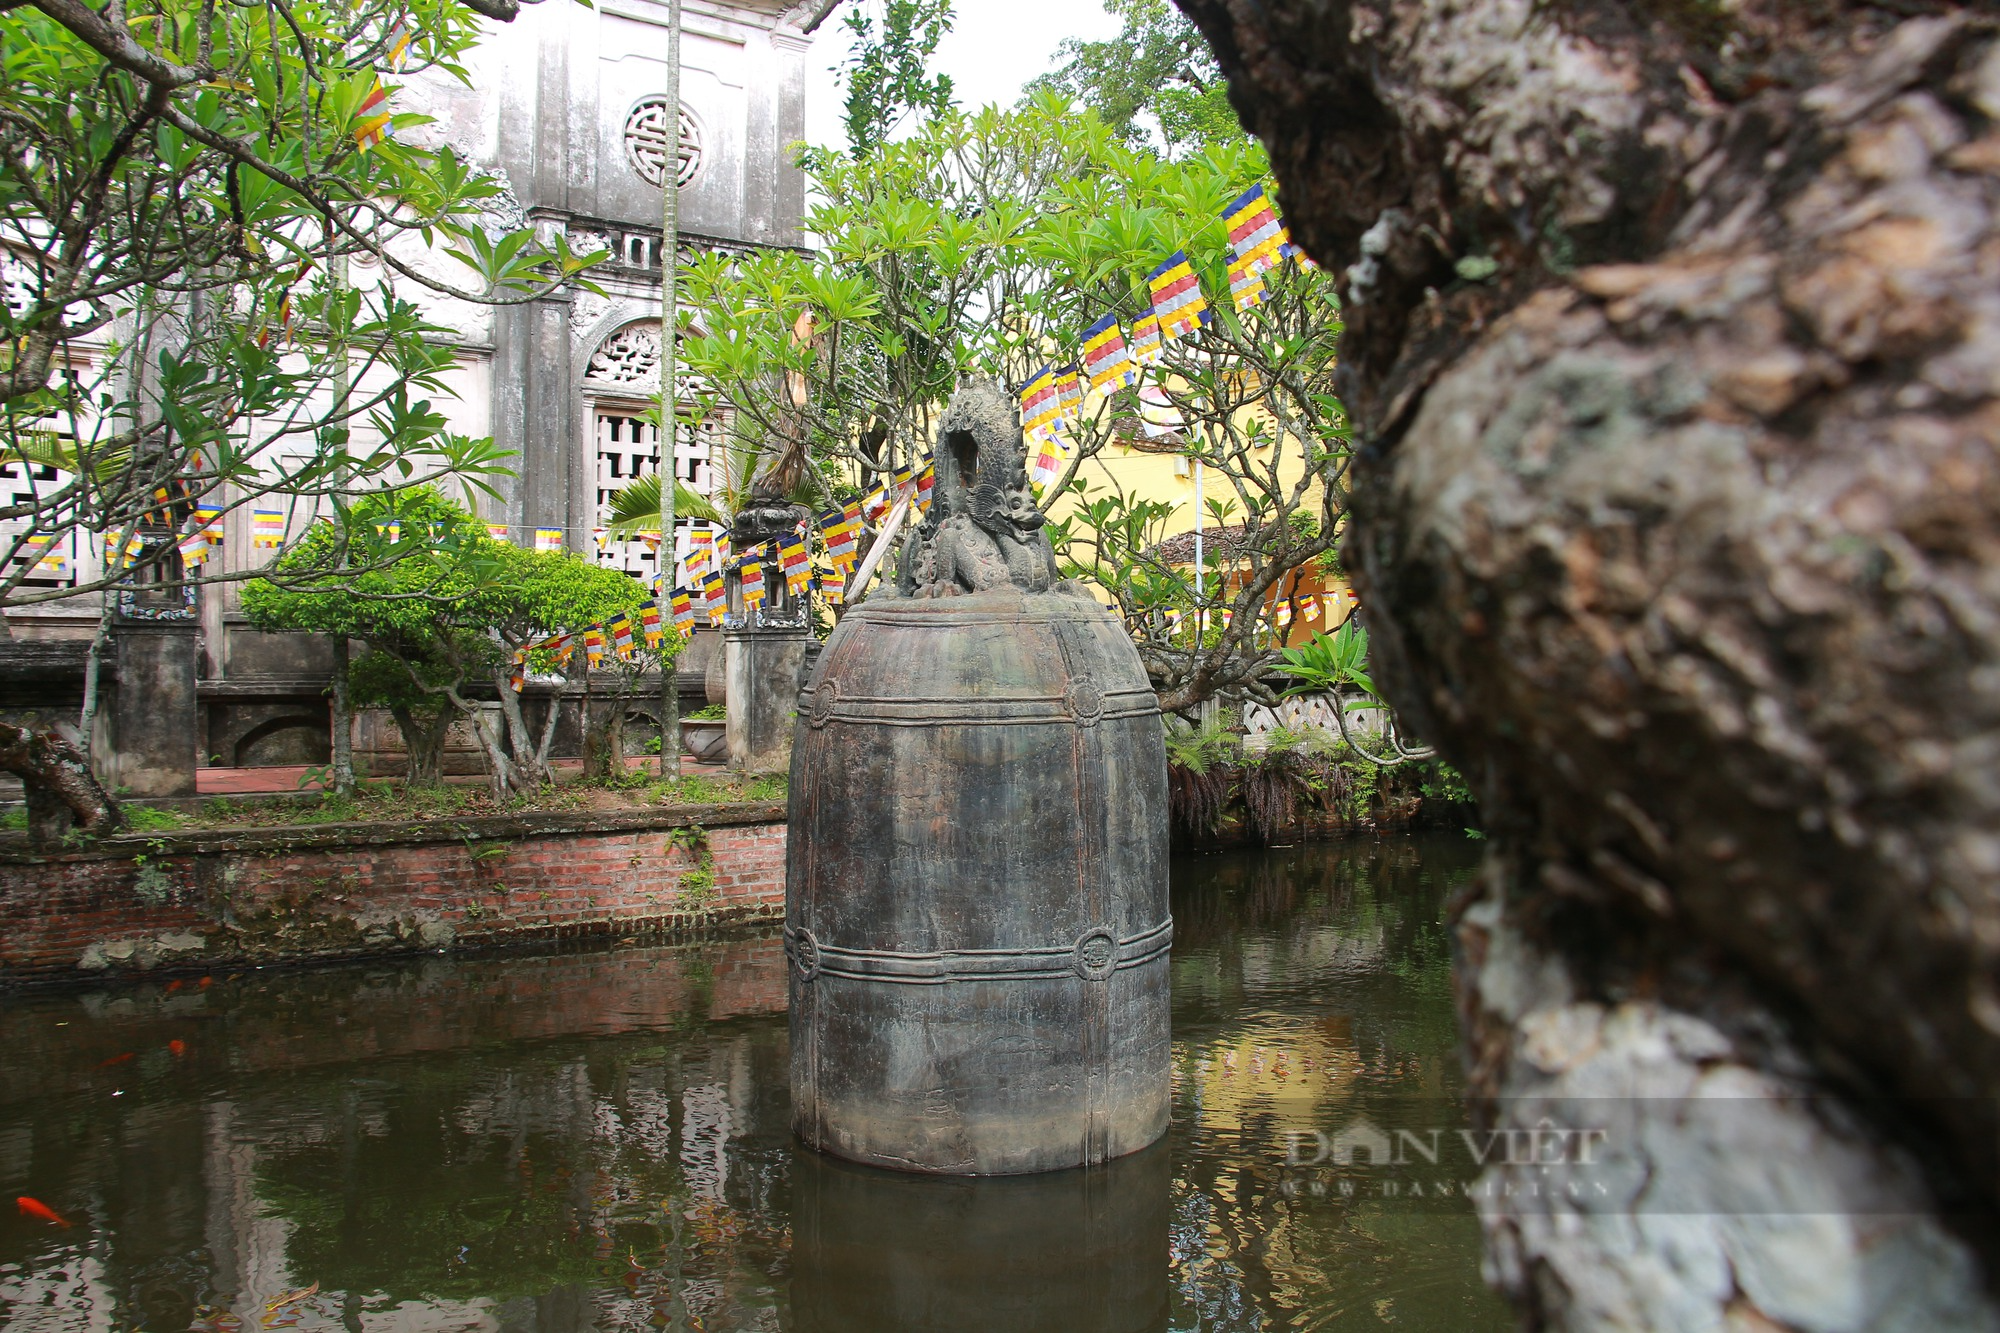 Kỳ lạ quả chuông đồng nặng 9 tấn được đặt giữa hồ chùa Cổ Lễ, chưa một lần ngân vang - Ảnh 7.